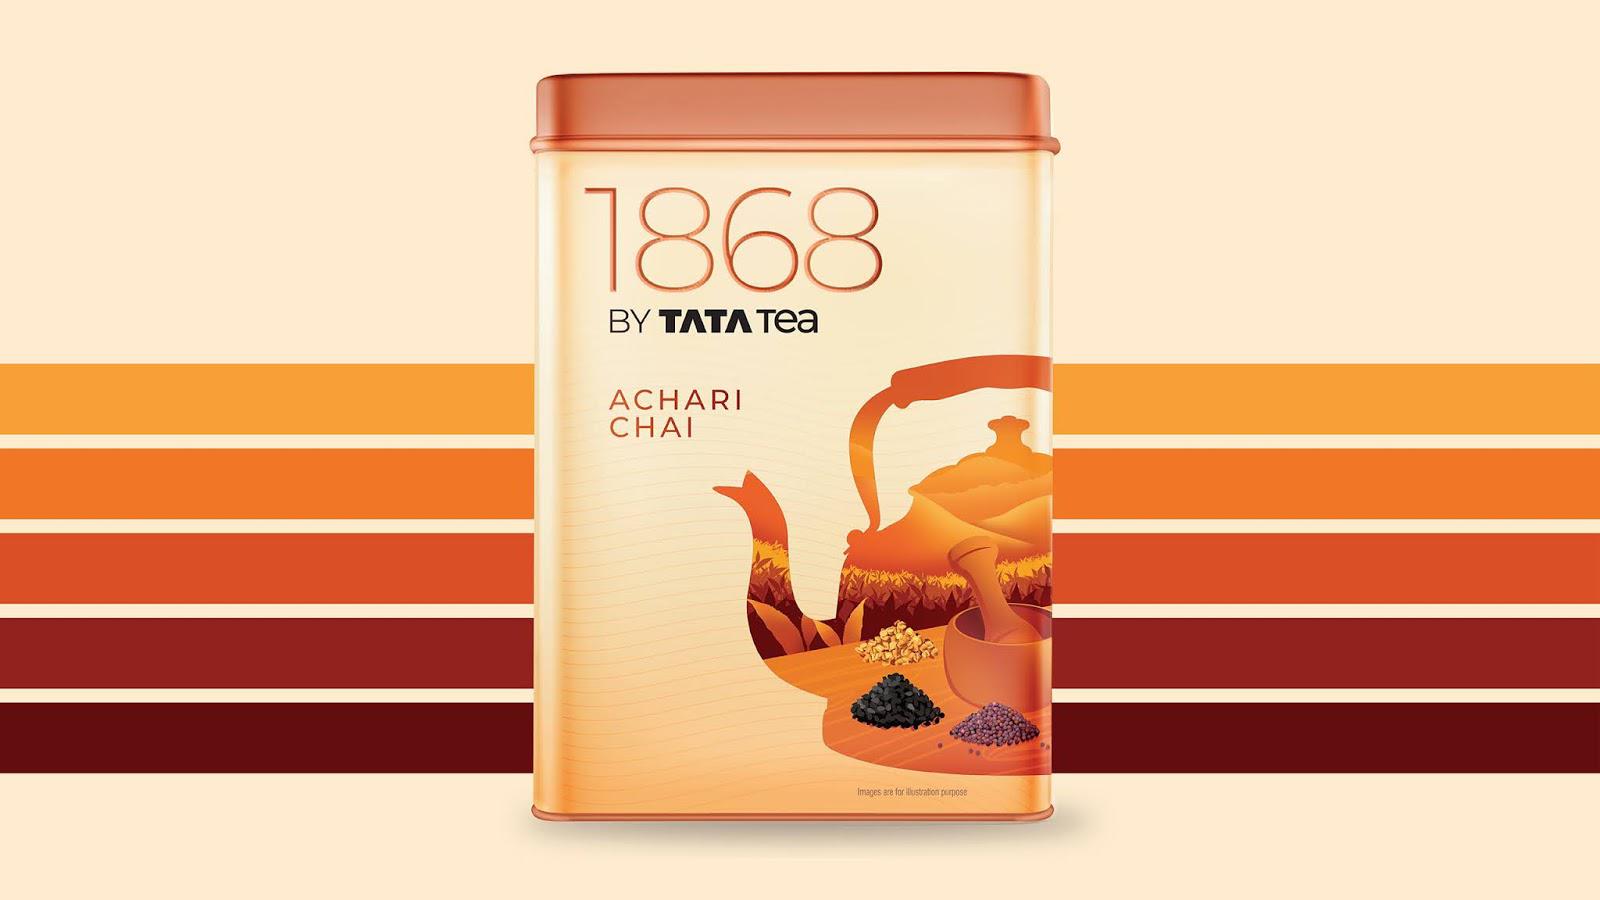 印度茶叶包装设计 印度茶叶包装设计哪家好 年轻人喜欢的茶叶包装设计 第3张